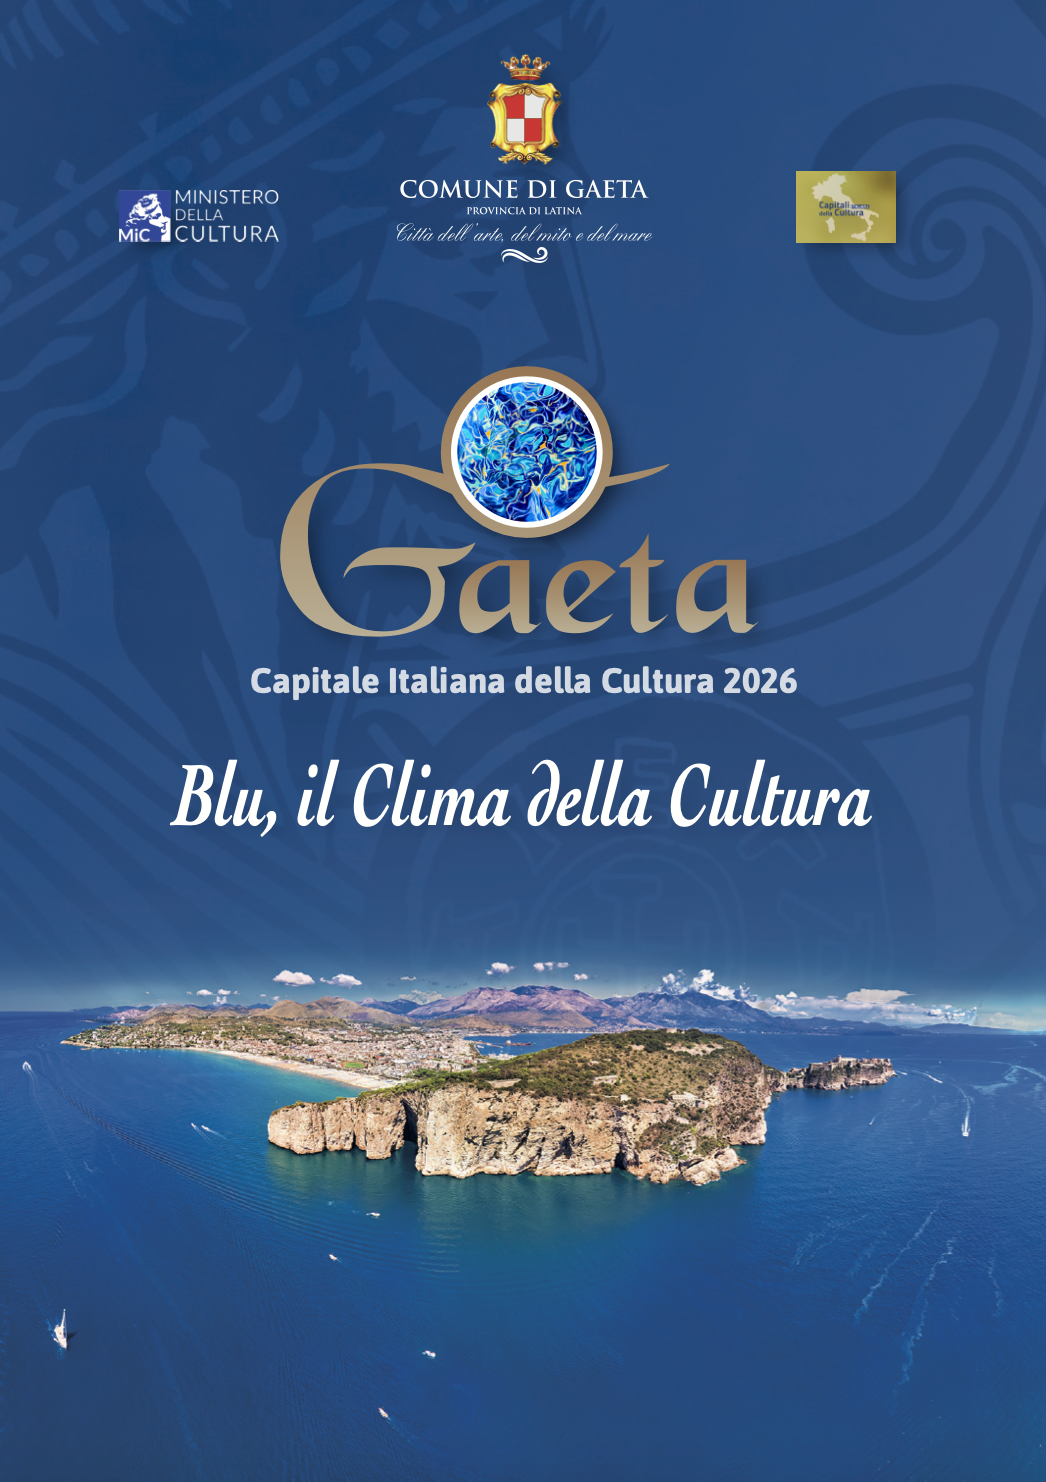 Gaeta e il suo "Blu, il Clima della Cultura" tra le dieci finaliste per l'assegnazione del titolo di Capitale italiana della Cultura 2026!